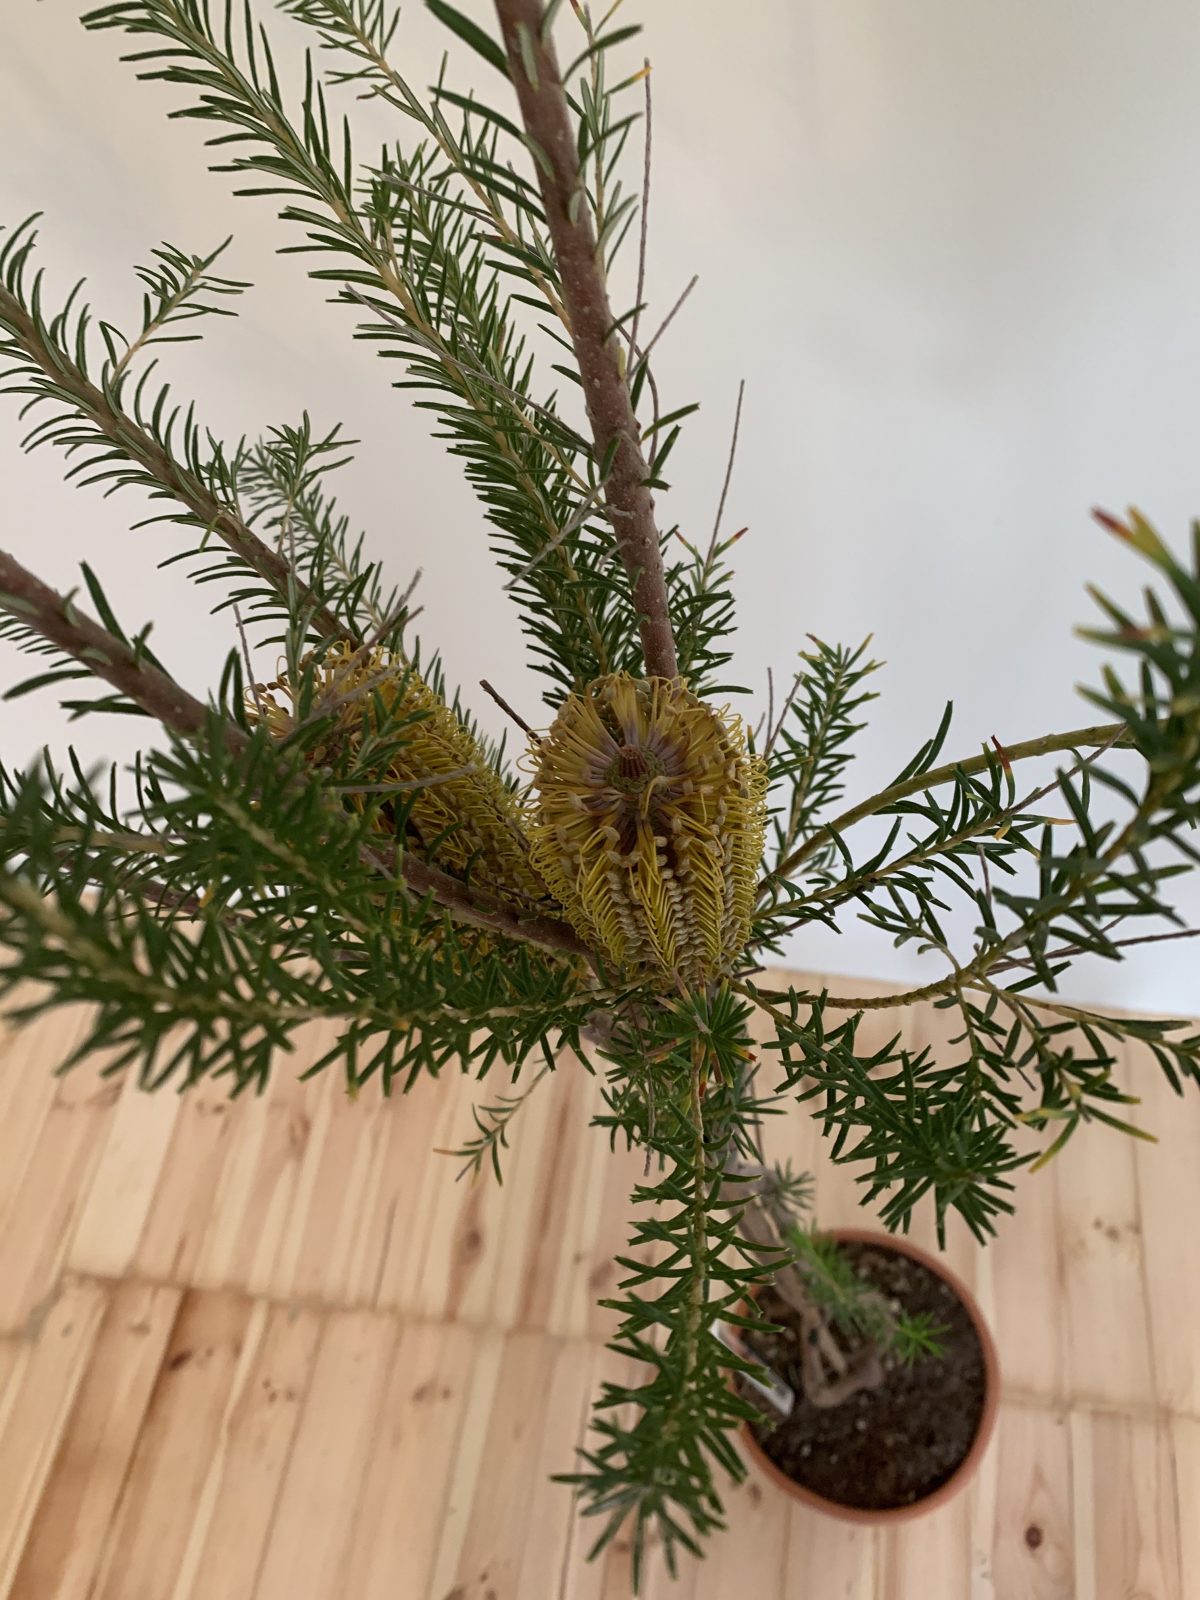 Протея Banksia ericifolia